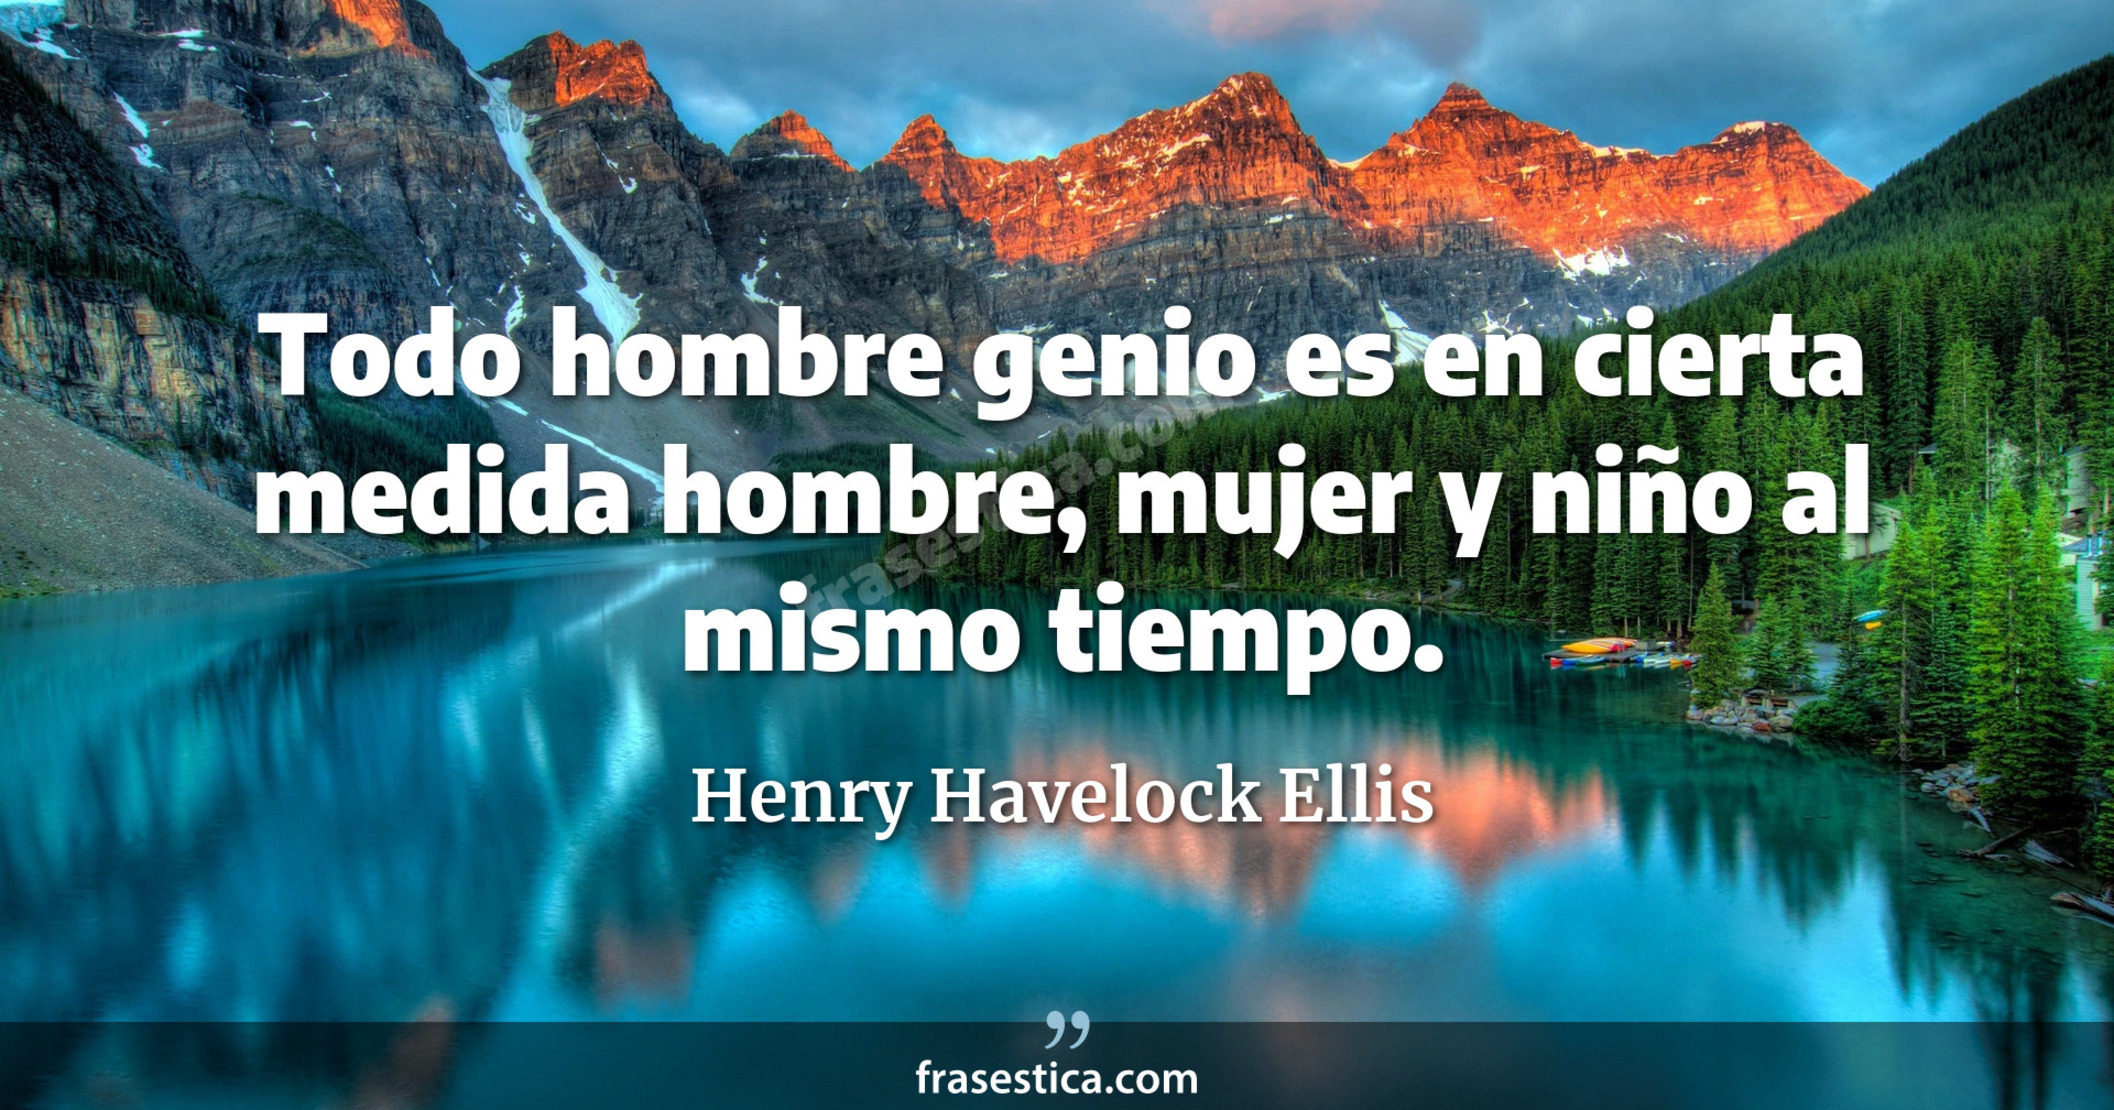 Todo hombre genio es en cierta medida hombre, mujer y niño al mismo tiempo. - Henry Havelock Ellis